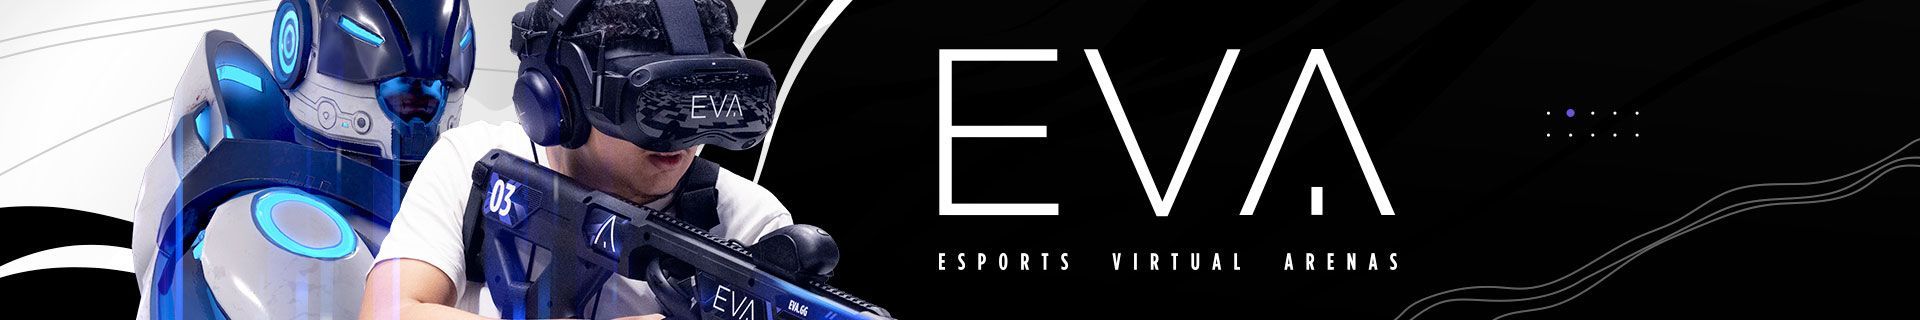 EVA (Esports Virtual Arenas) (Entertainment franchises)